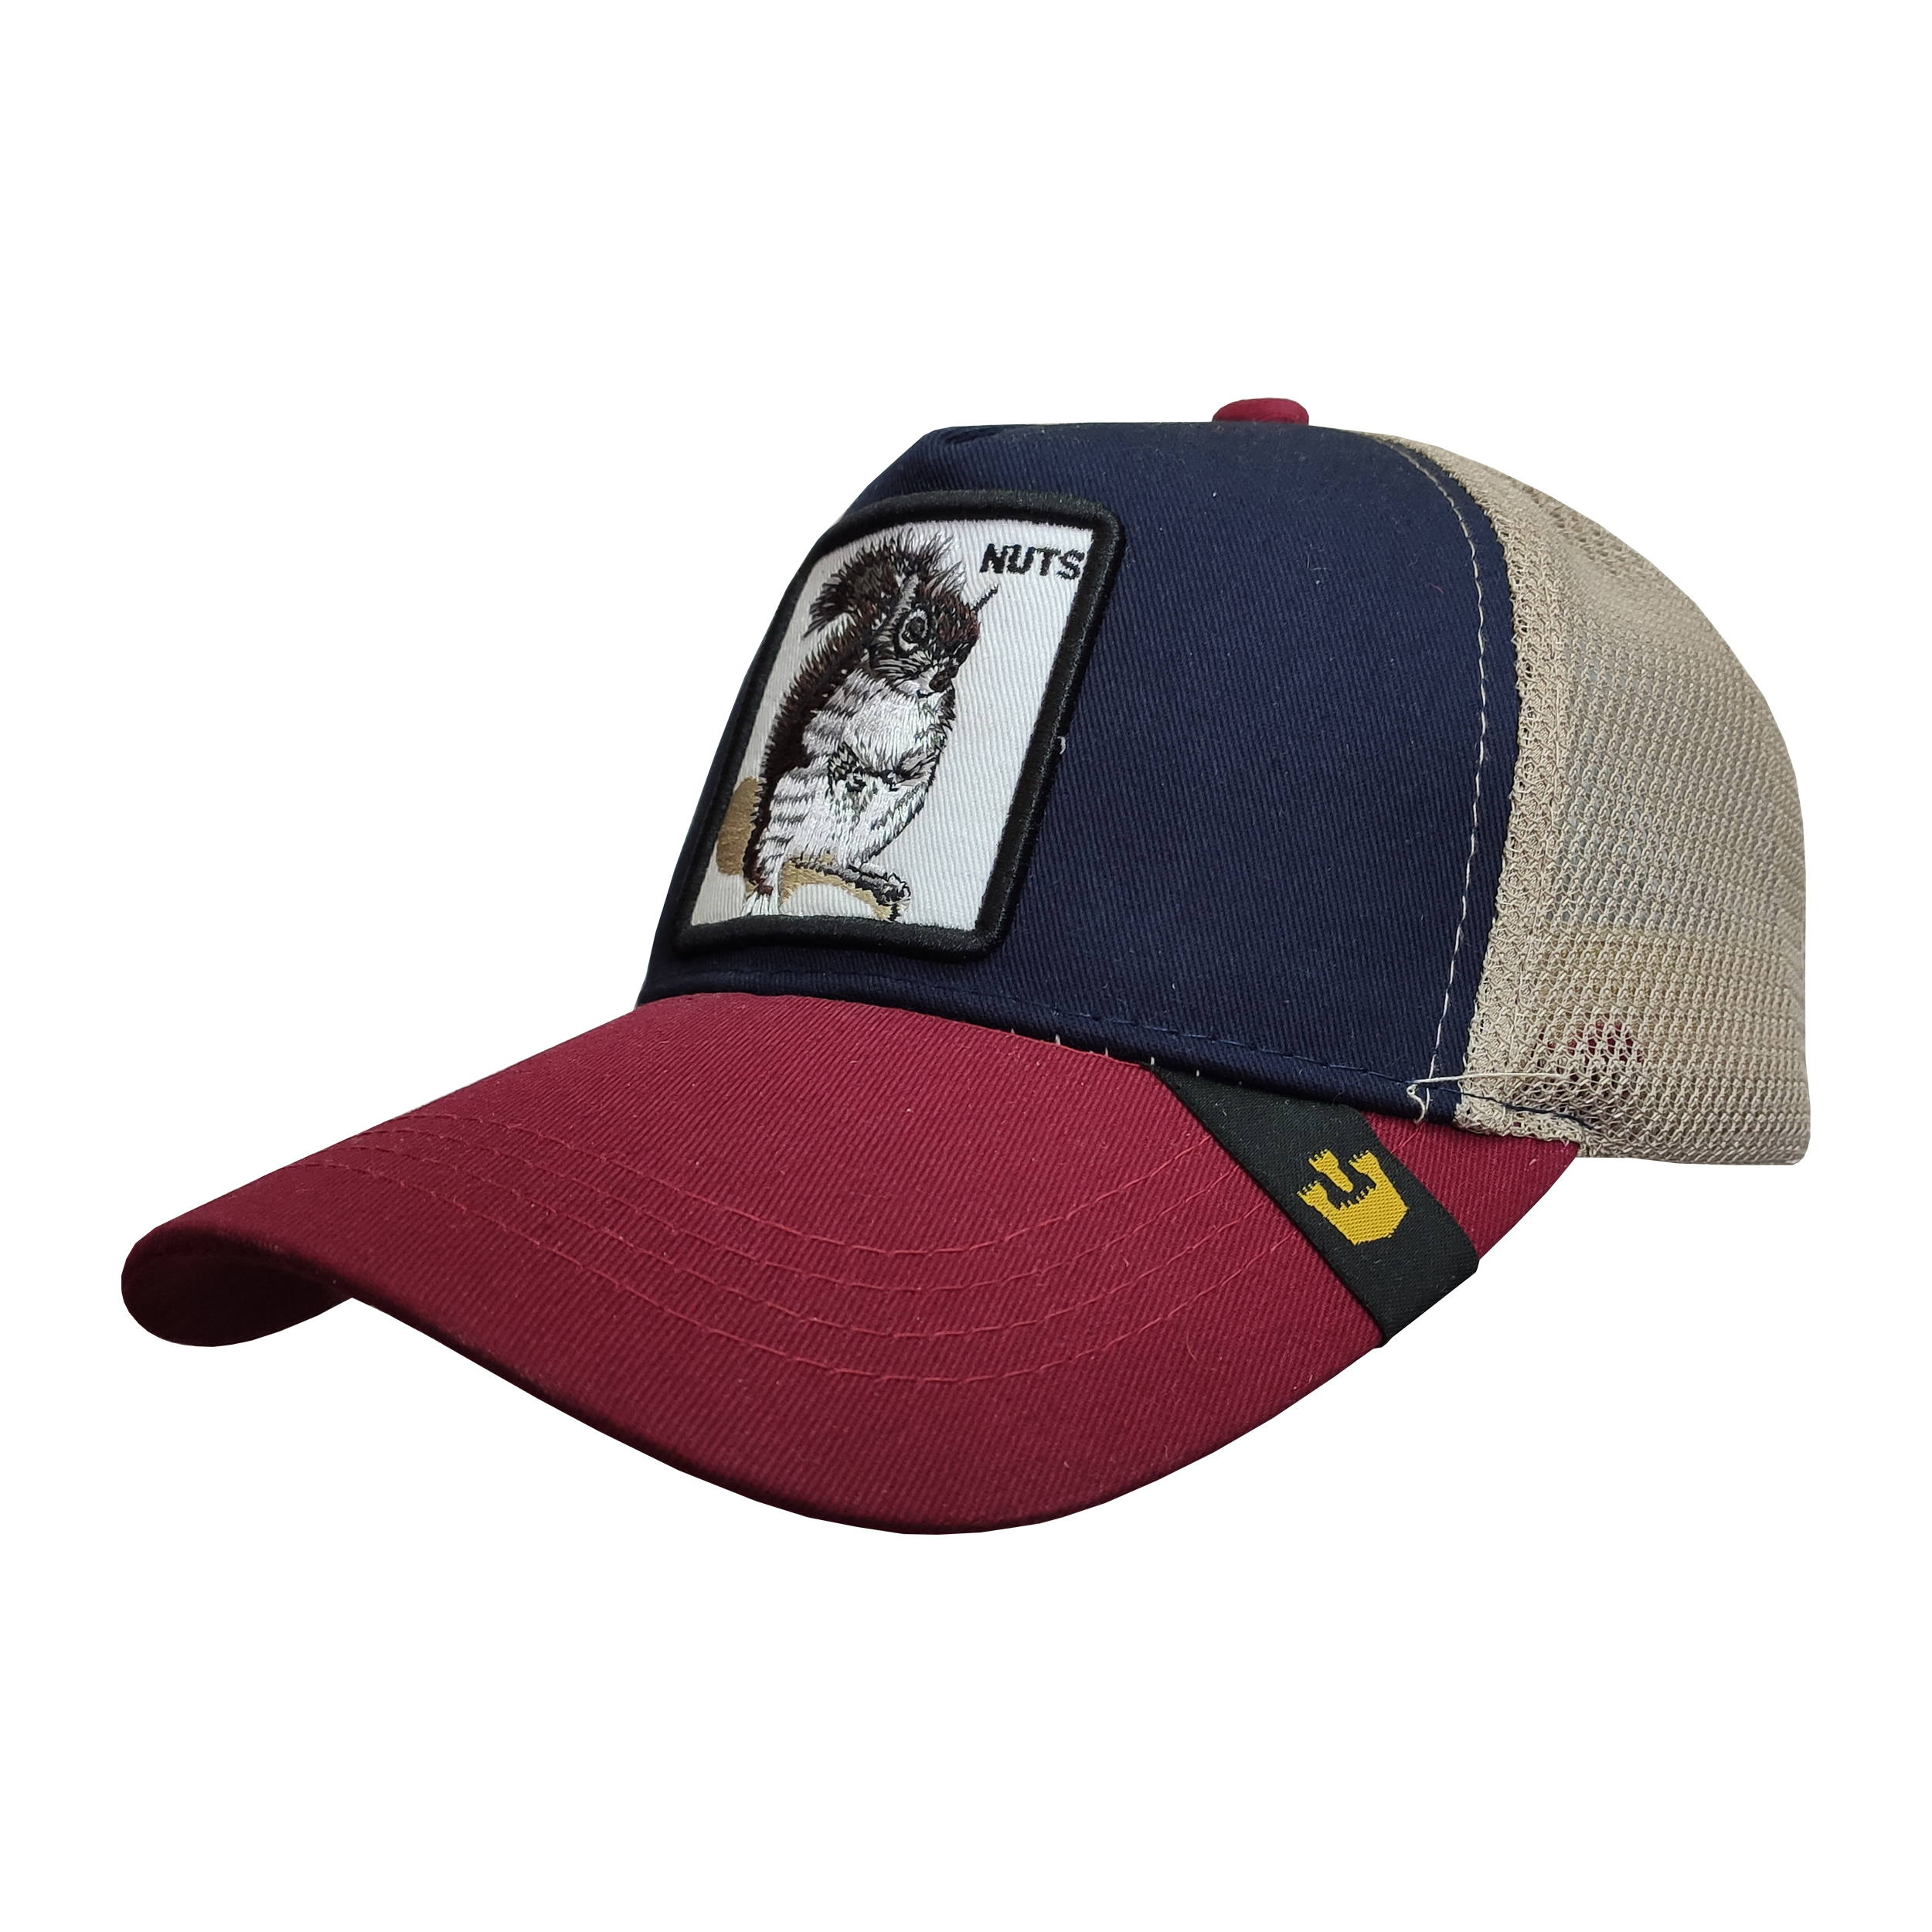 کلاه کپ پسرانه طرح سنجاب کد PT-30307 رنگ زرشکی